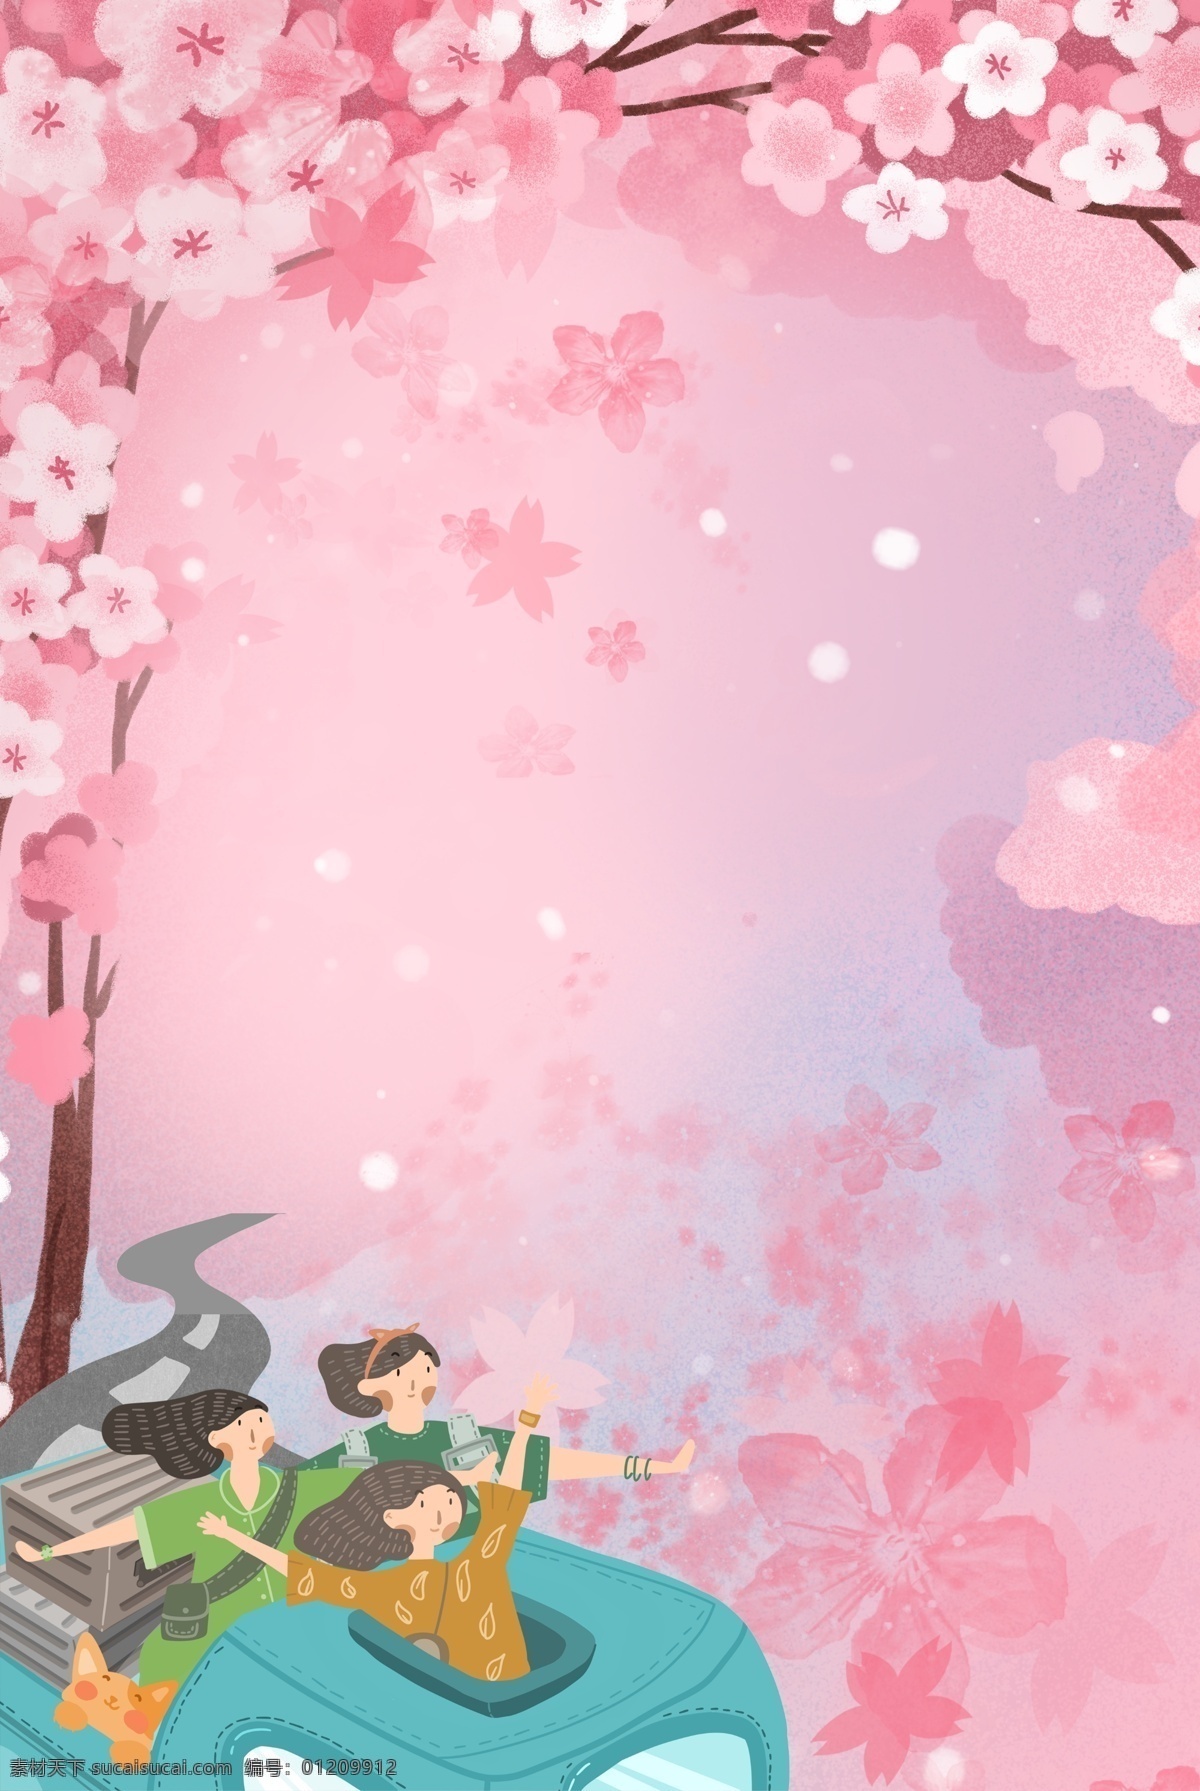 浪漫 樱花 季 出行 背景 合成 樱花季 樱花节 唯美 粉色 花瓣 女孩 旅行 花朵 创意 简约